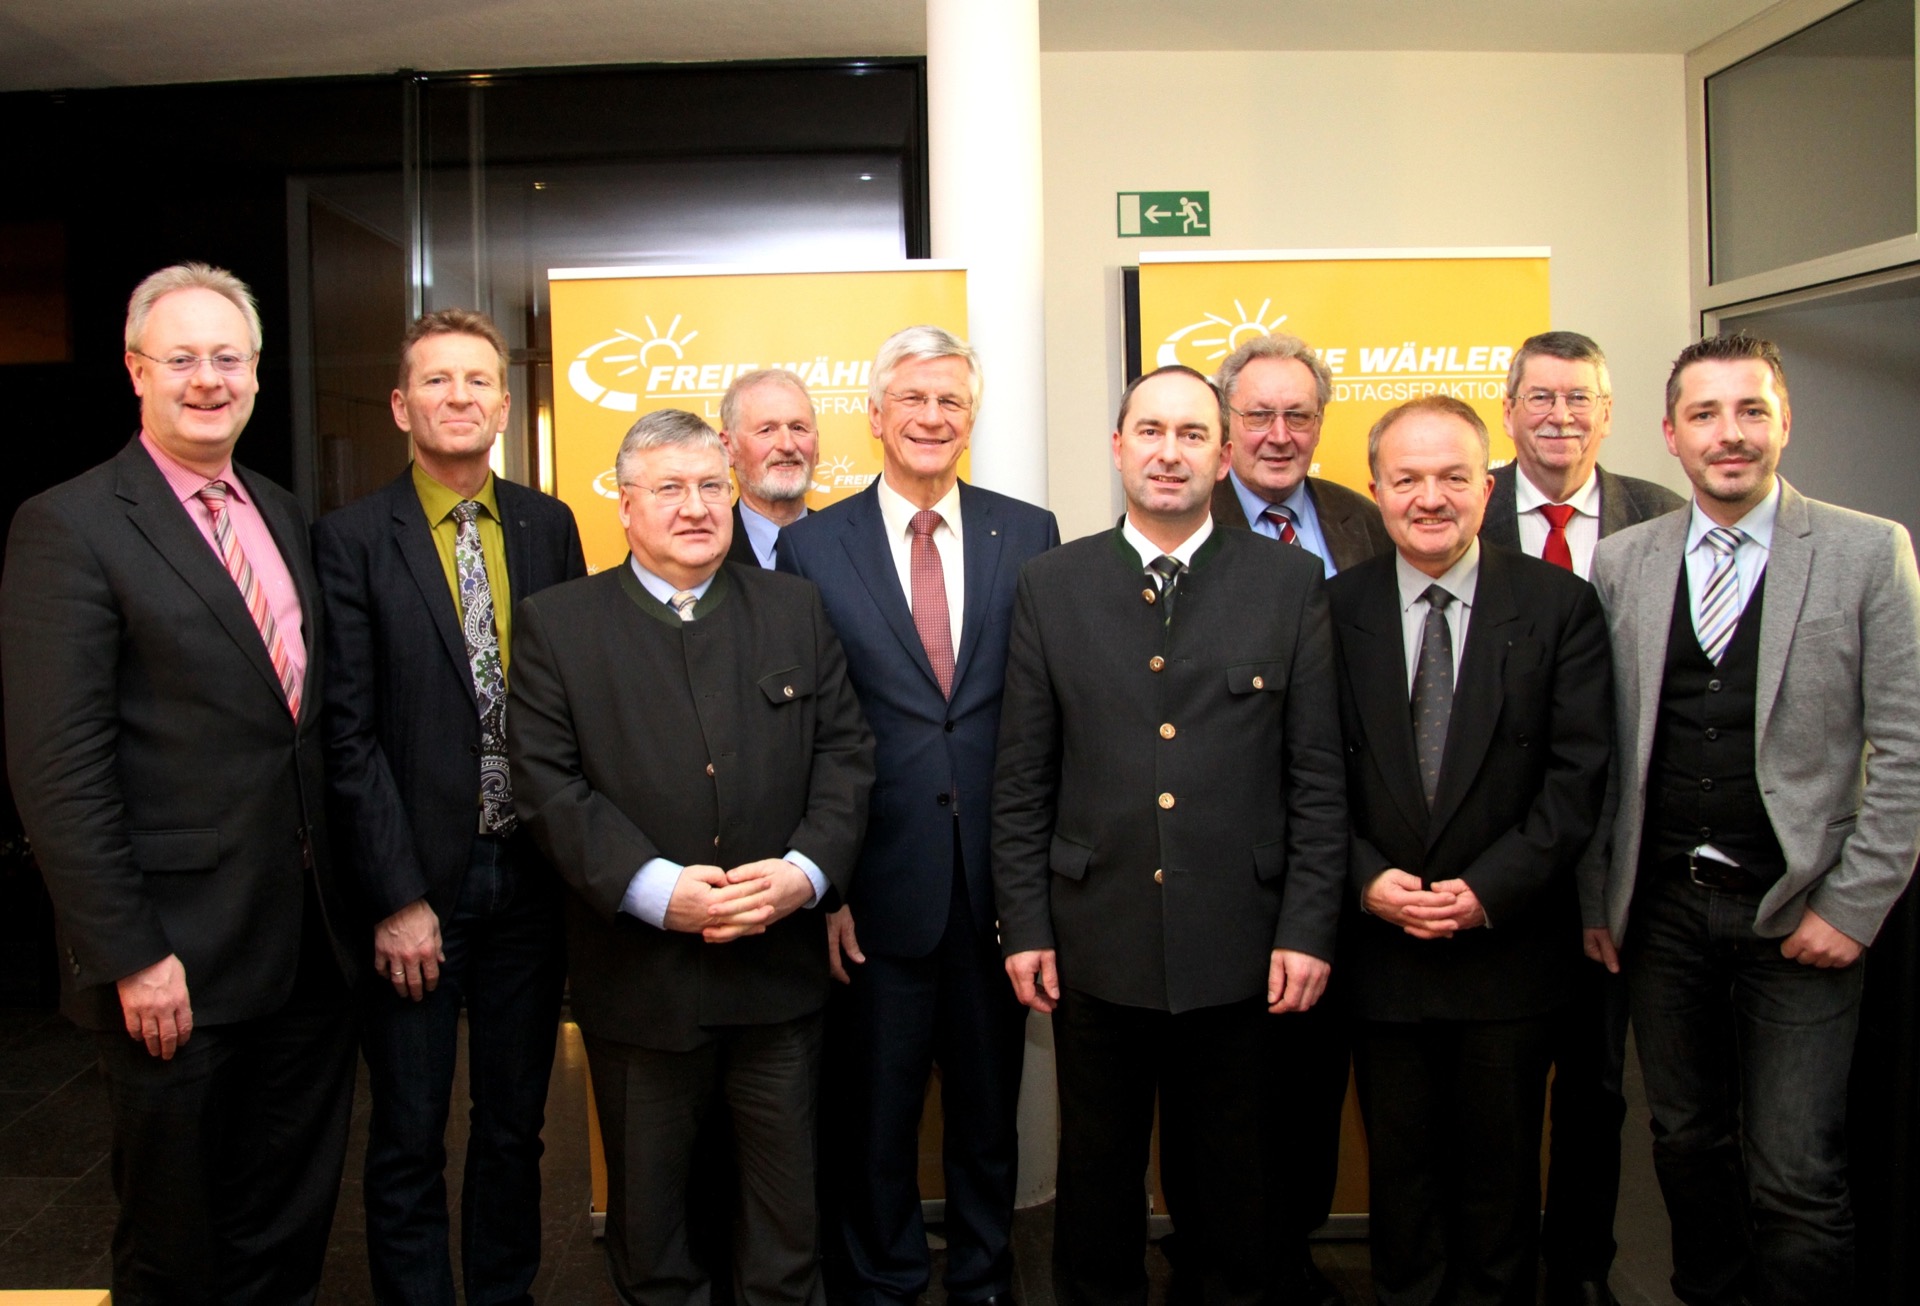 Unser Foto zeigt die Abgeordneten Bernhard Pohl (links); Günther Felbinger (2.v.l); Hubert Aiwanger (5.v.r.); Dr. Hans Jürgen Fahn (3.v.r.) sowie den BdV-Landesvorsitzenden Christian Knauer (5.v.l) und weitere Vertreter des BdV.